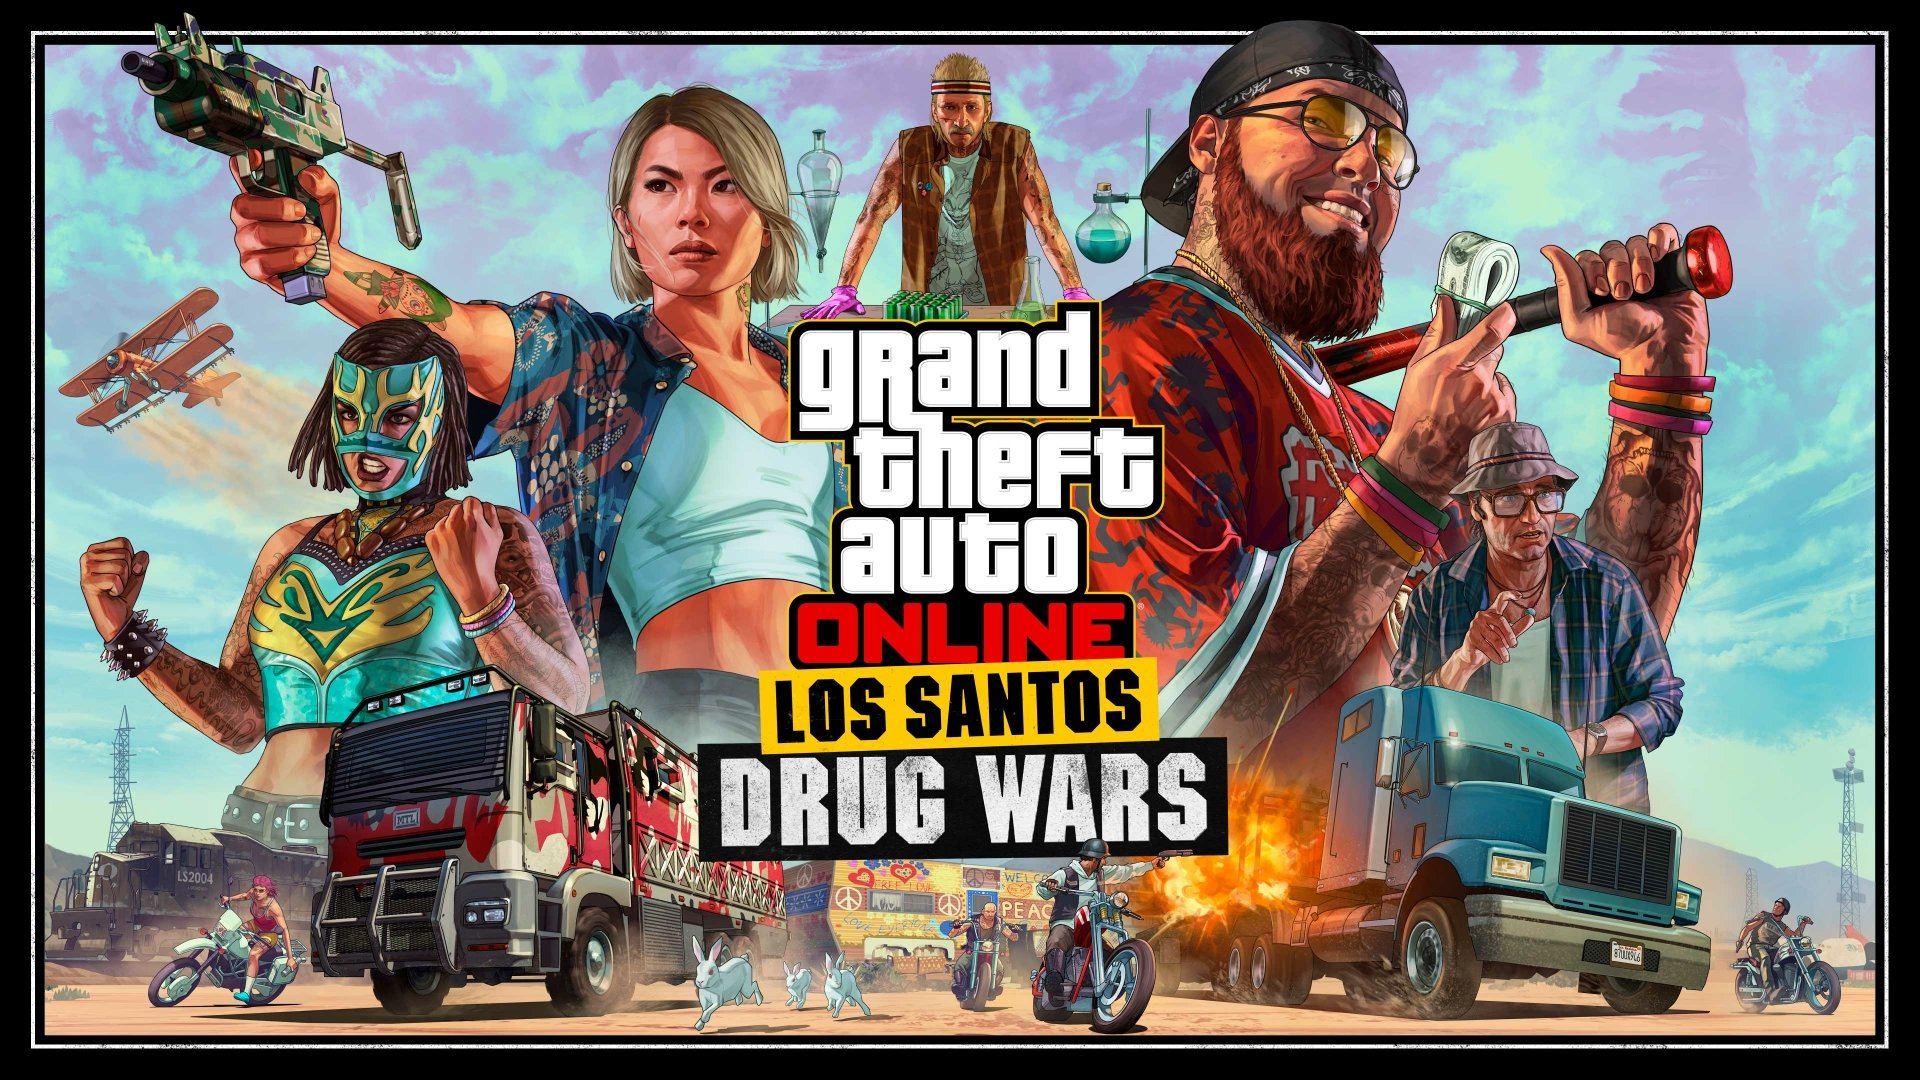 Los santos drug wars